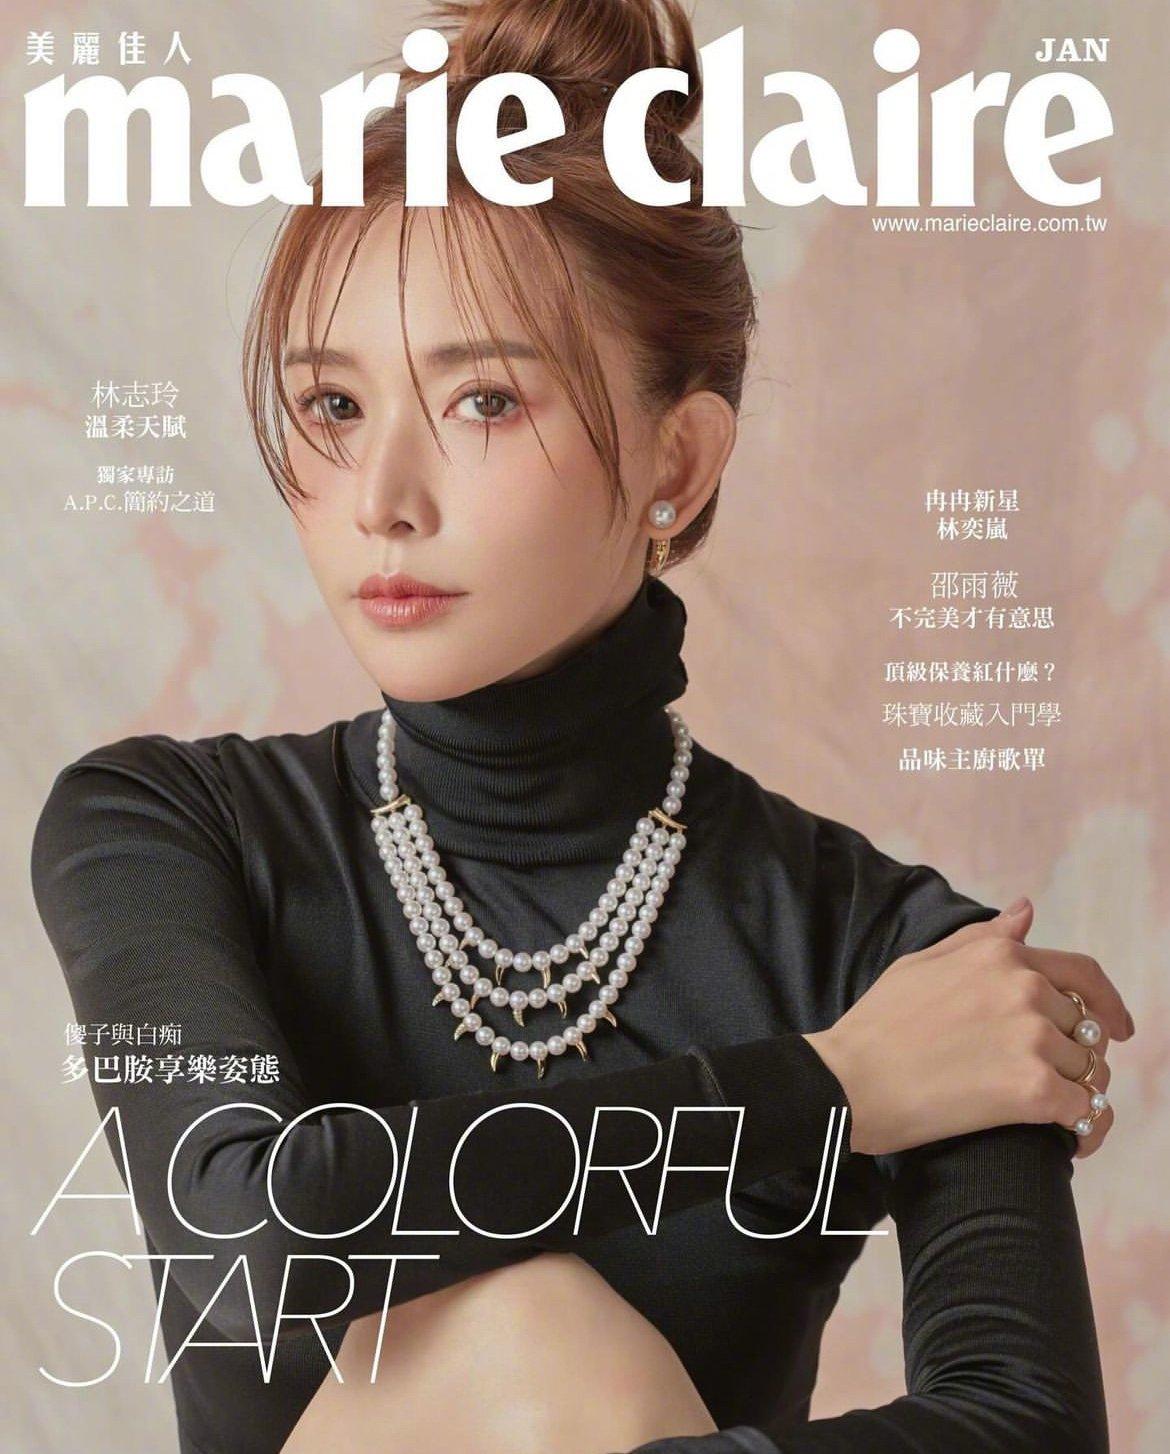 《Marie Claire》杂志封面林志玲时尚大片曝光 湿刘海丸子头日系十足,1 (1)